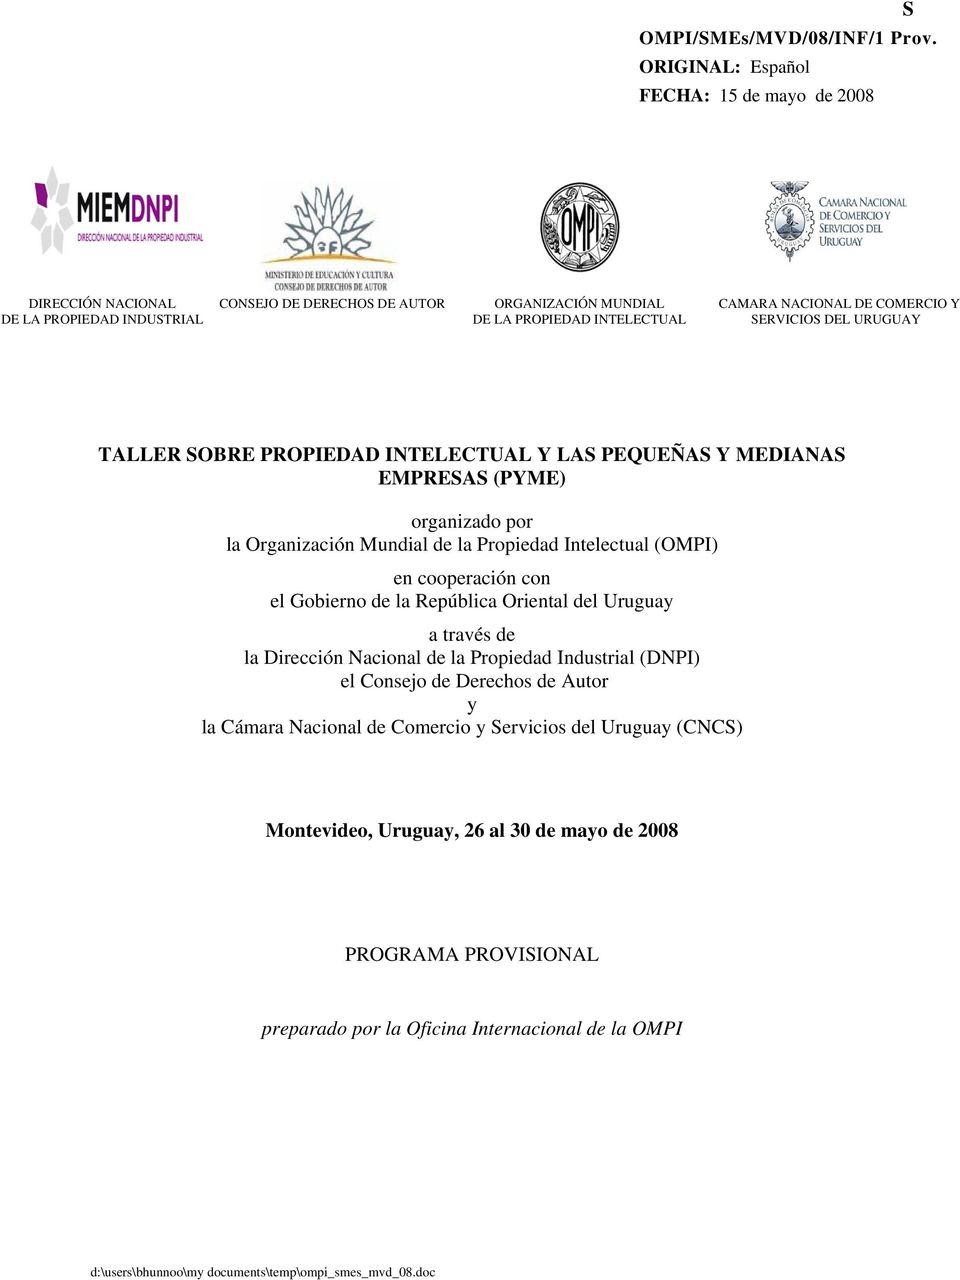 SERVICIOS DEL URUGUAY TALLER SOBRE PROPIEDAD INTELECTUAL Y LAS PEQUEÑAS Y MEDIANAS EMPRESAS (PYME) organizado por la Organización Mundial de la Propiedad Intelectual (OMPI) en cooperación con el